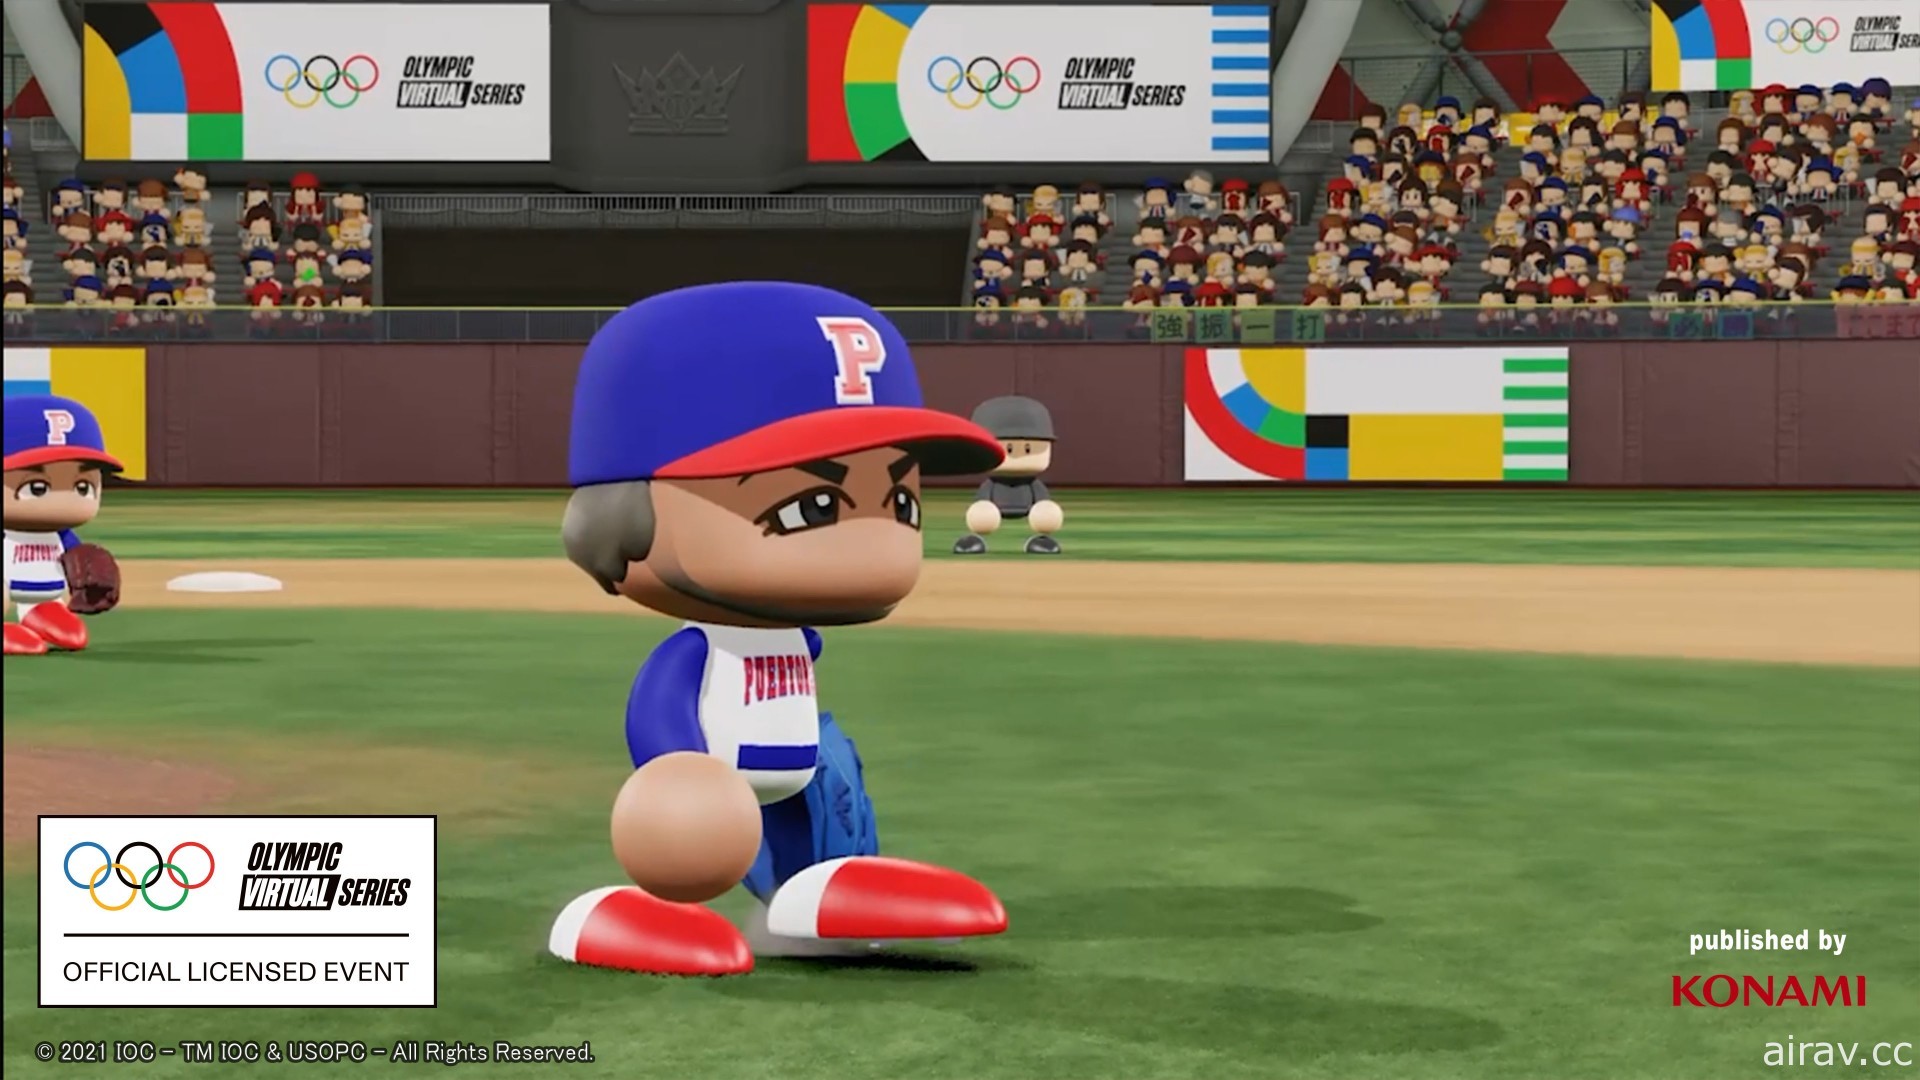 首屆奧林匹克虛擬系列賽將在《eBASEBALL 實況野球 2020》遊戱中舉行